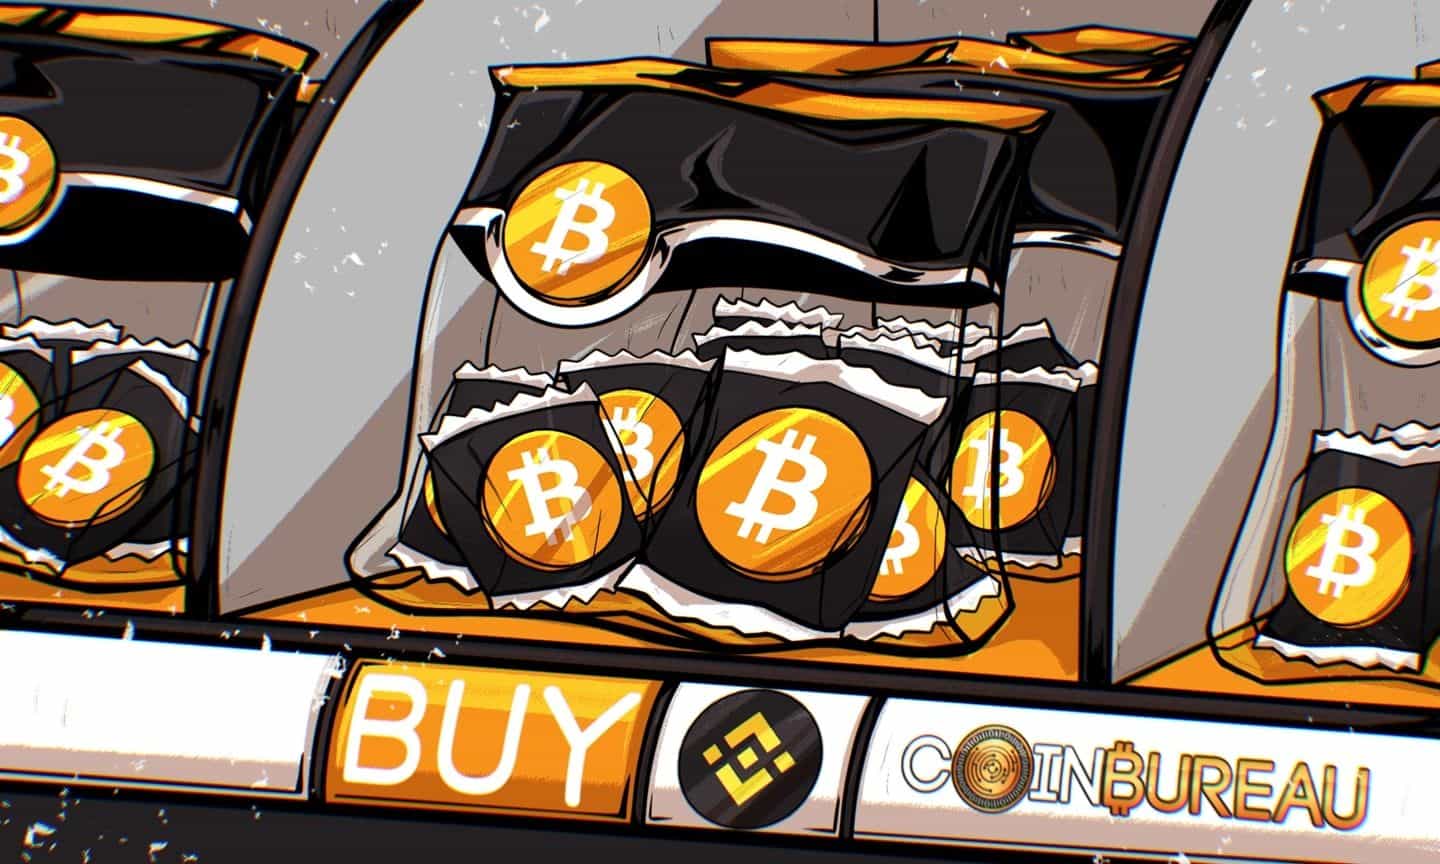 How to Buy Bitcoin on Binance